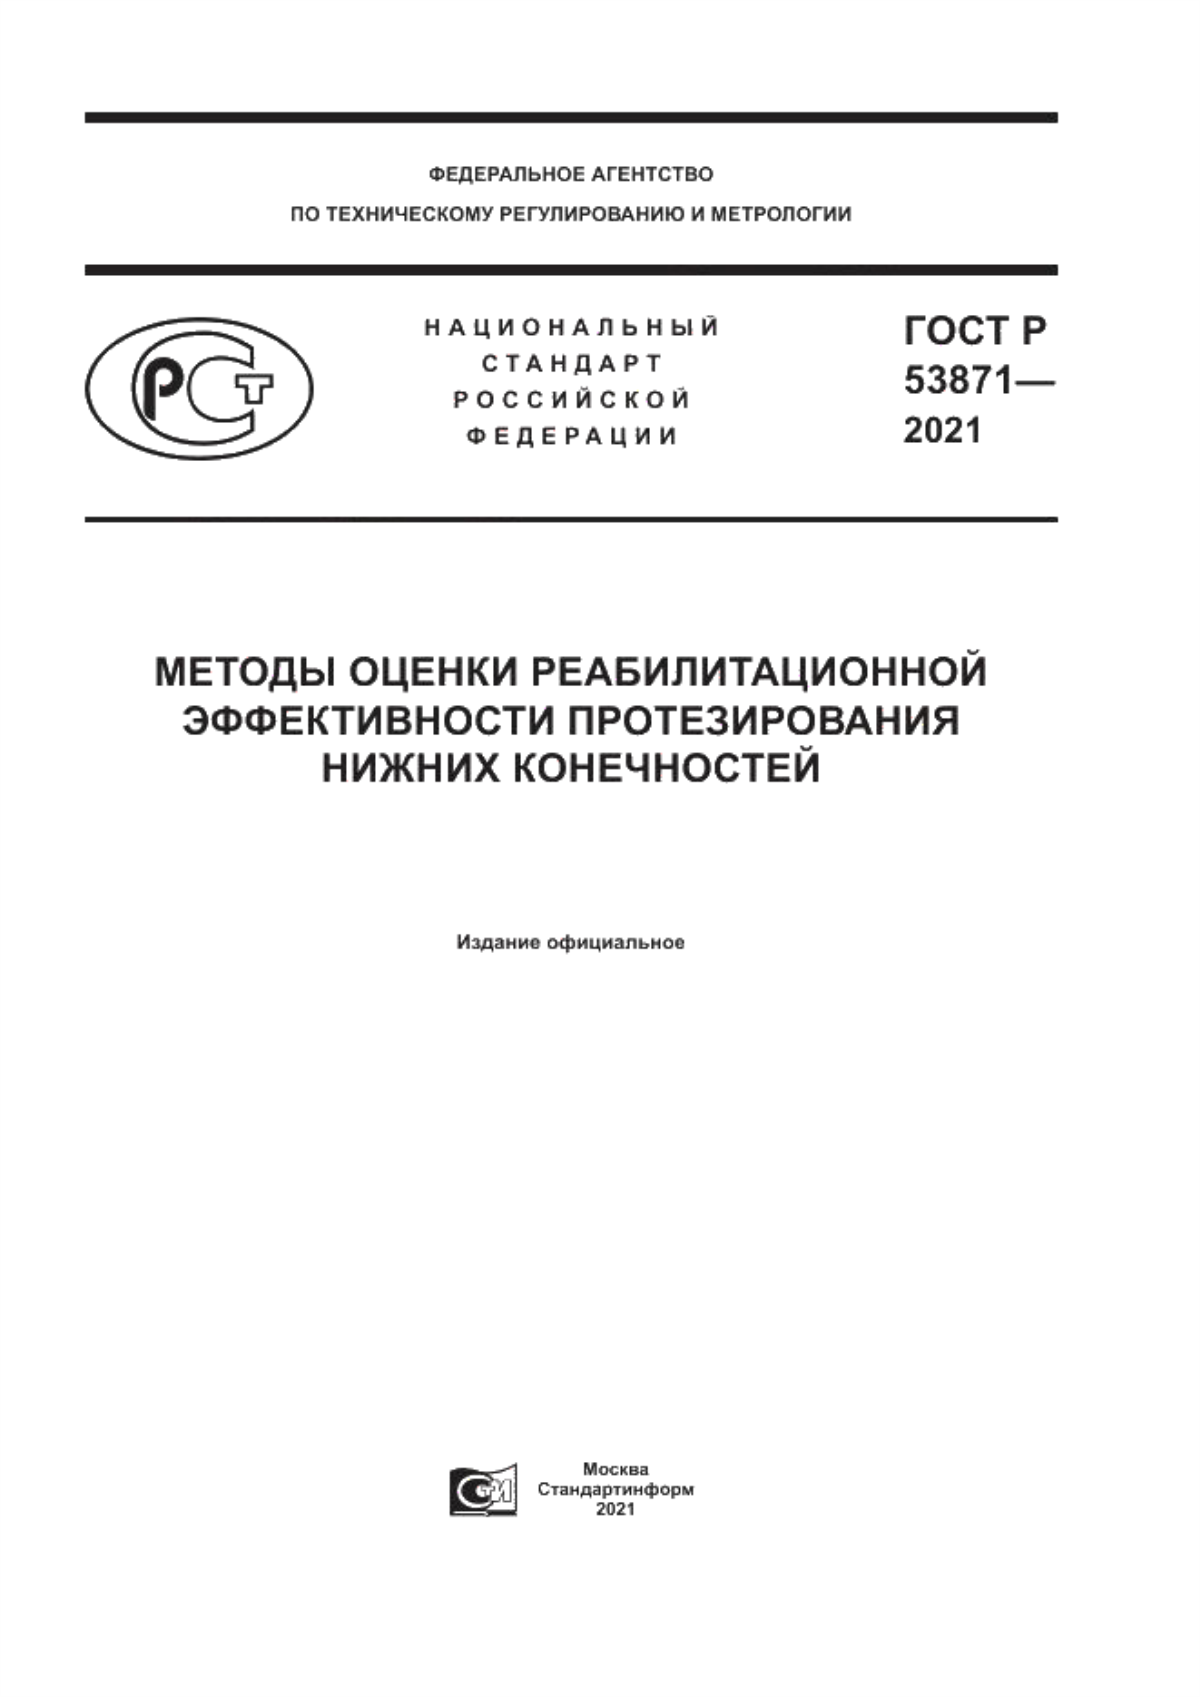 ГОСТ Р 53871-2021 Методы оценки реабилитационной эффективности протезирования нижних конечностей